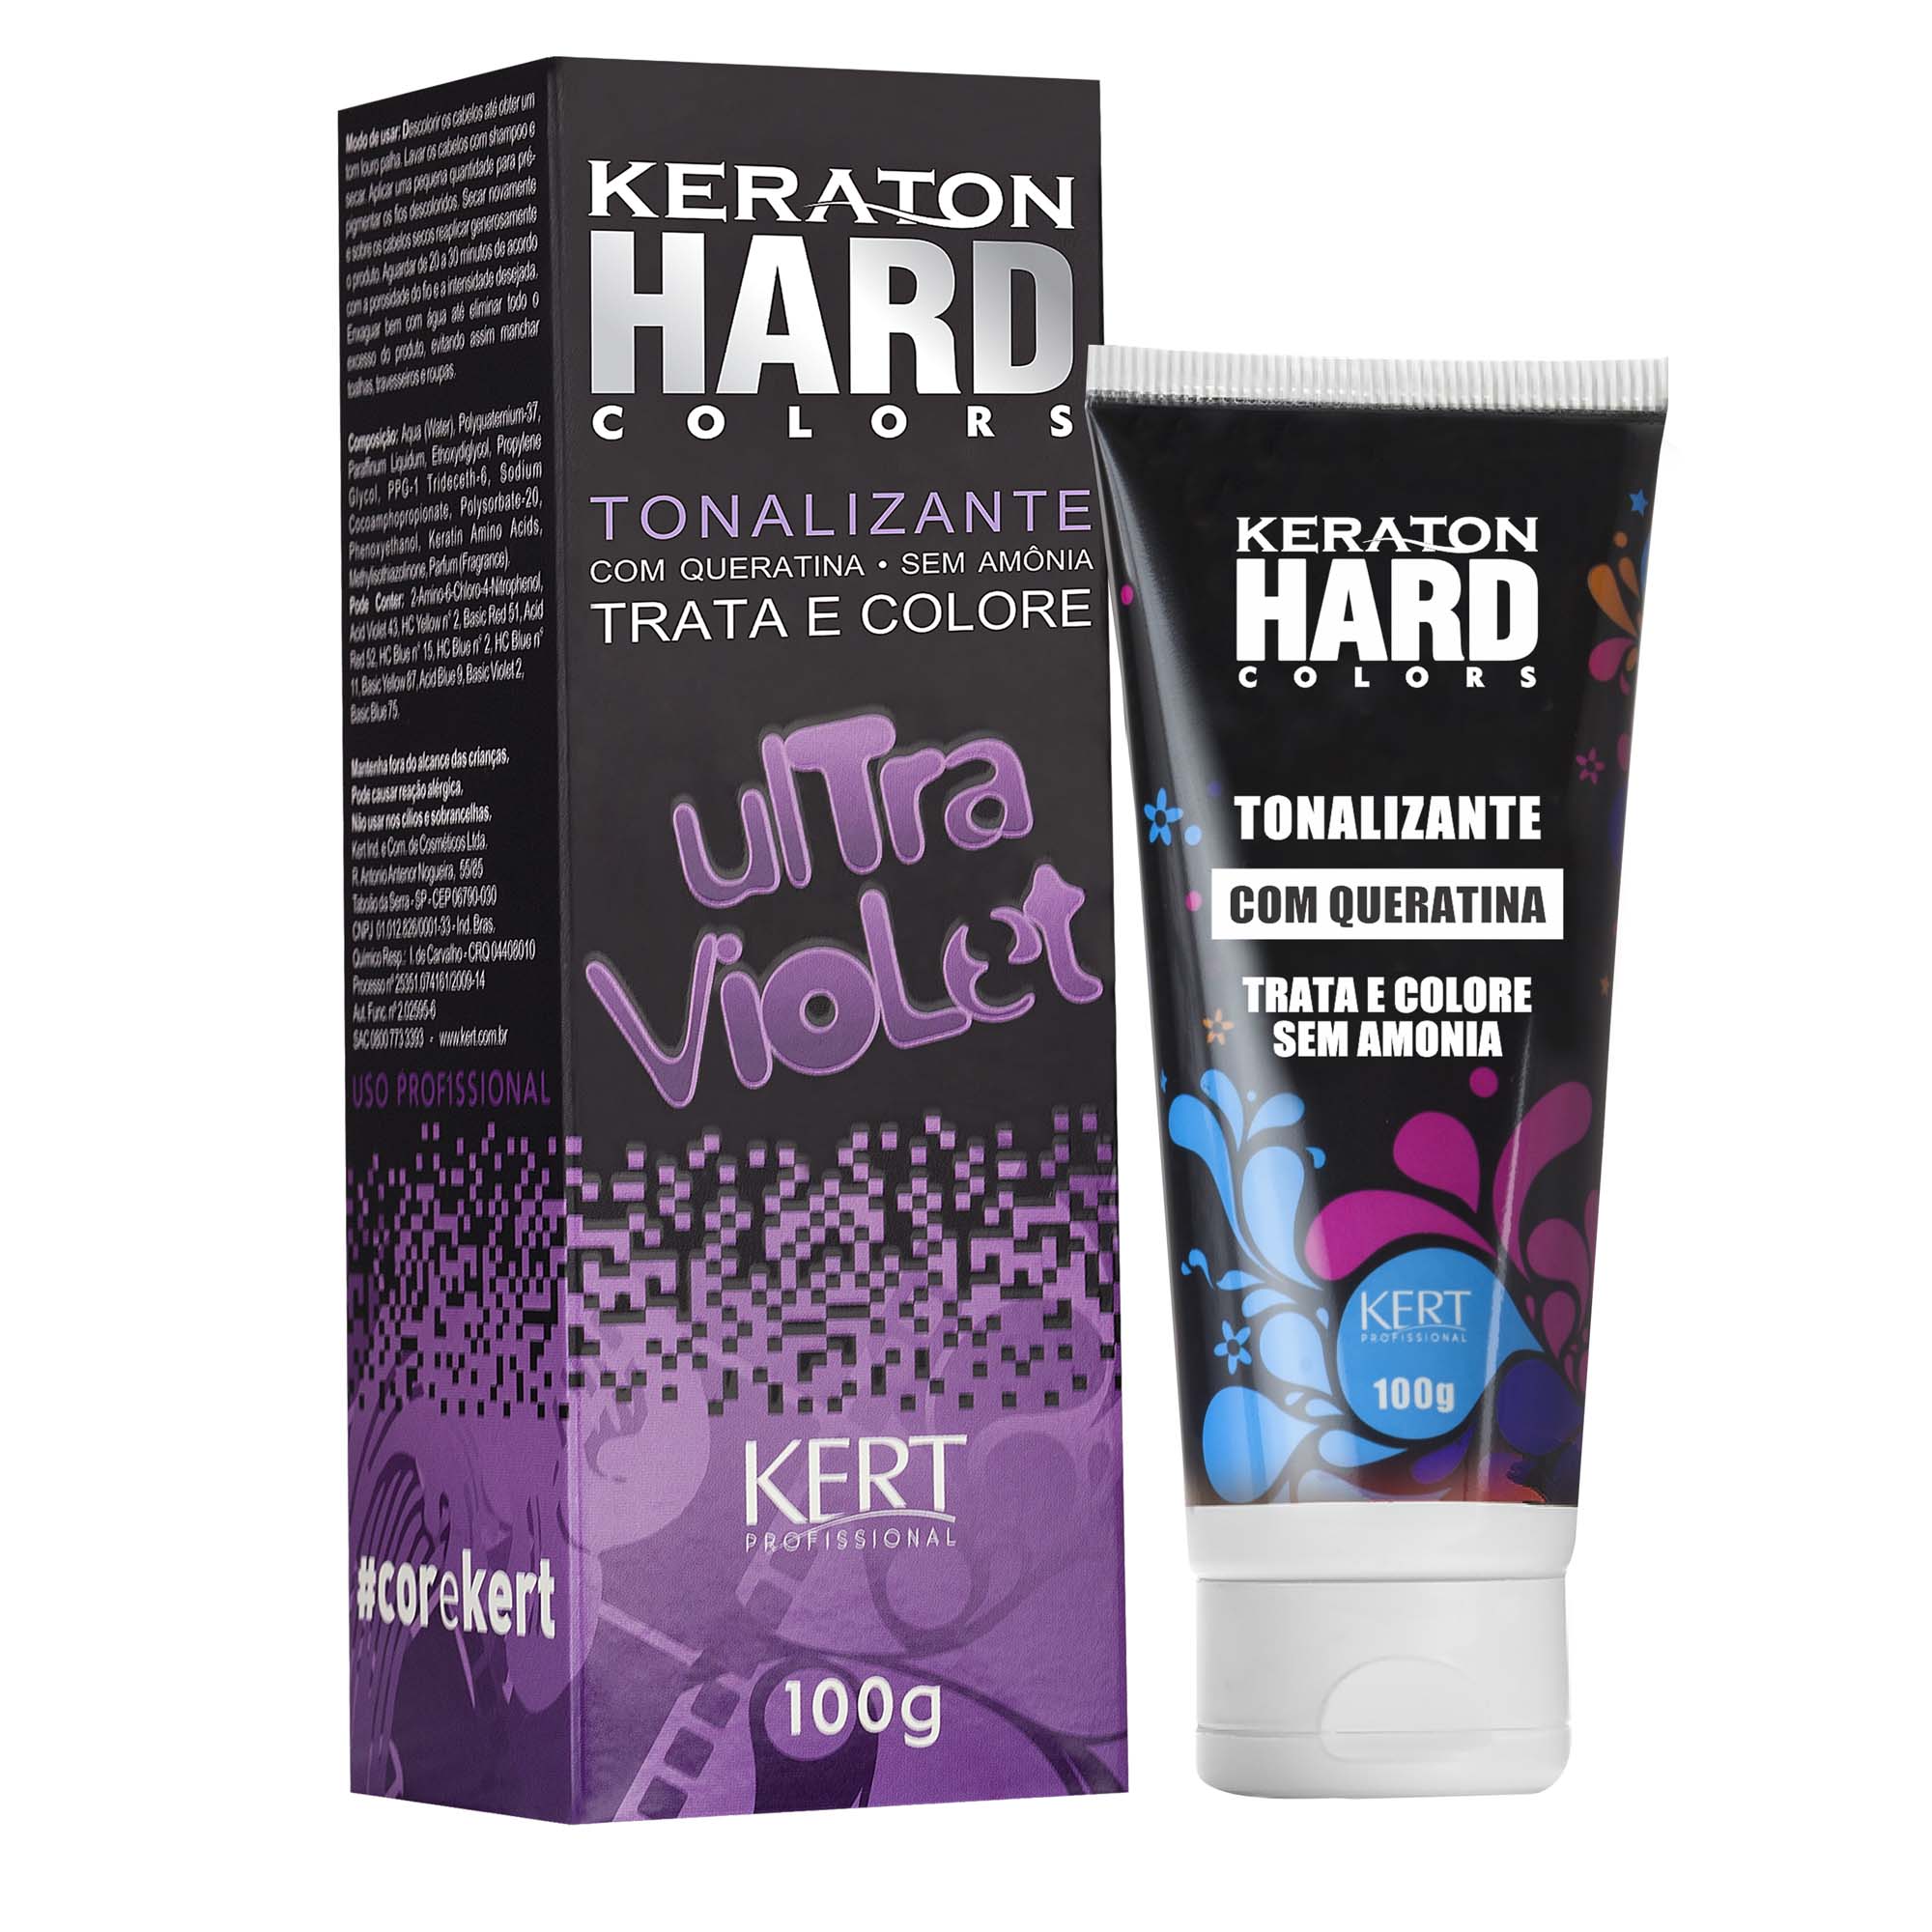 Kert Keraton Hard Colors Tonalizante Cor Ultra Violet - 100g